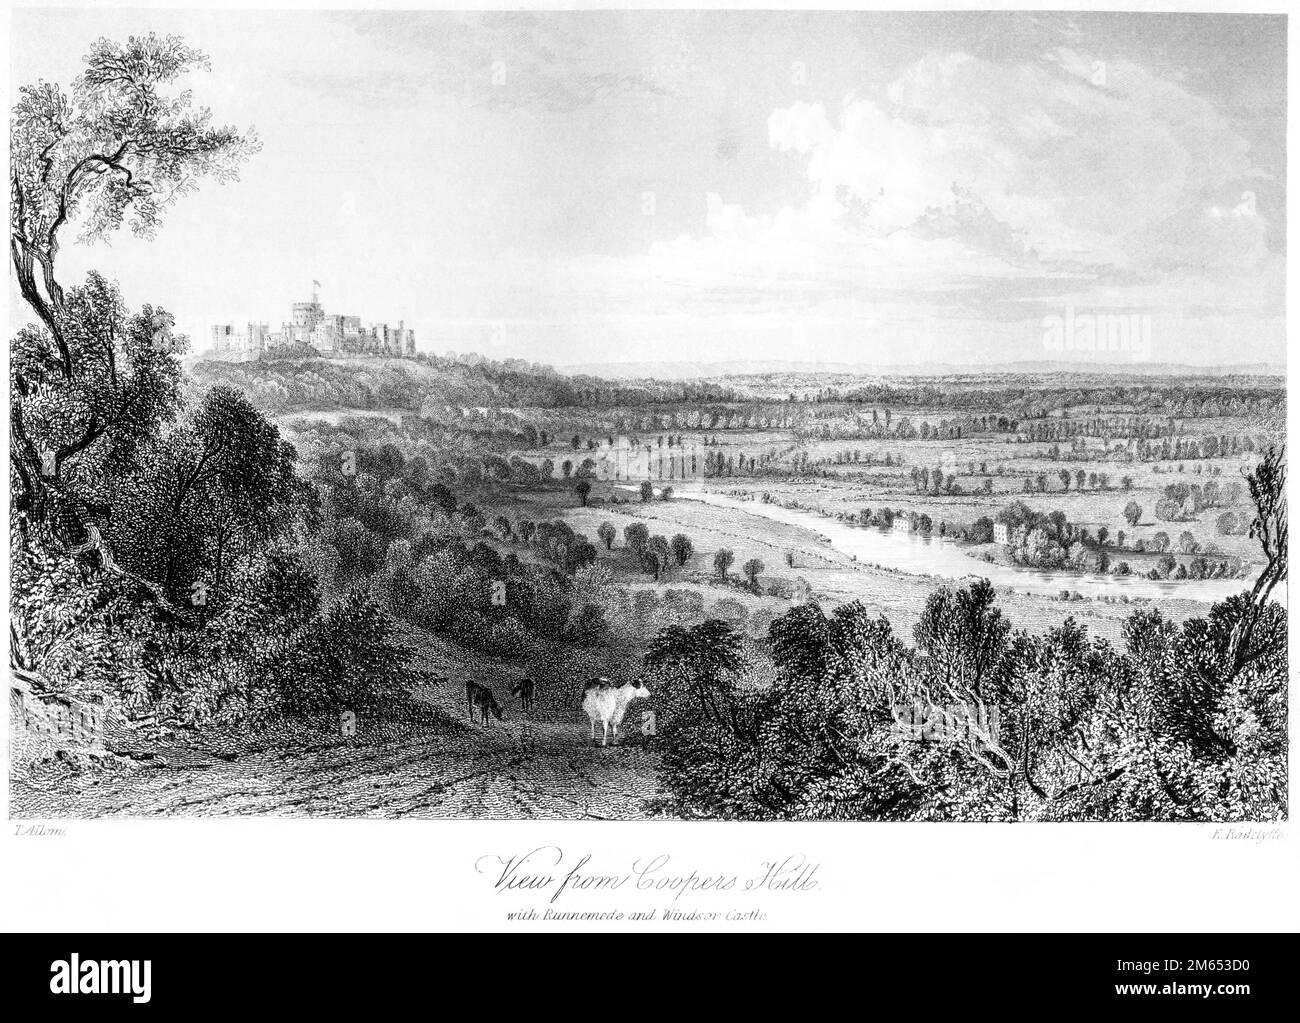 Une gravure d'une vue de Coopers Hill., Surrey avec Runnemede et Windsor Castle numérisée à haute résolution à partir d'un livre imprimé en 1850. Banque D'Images